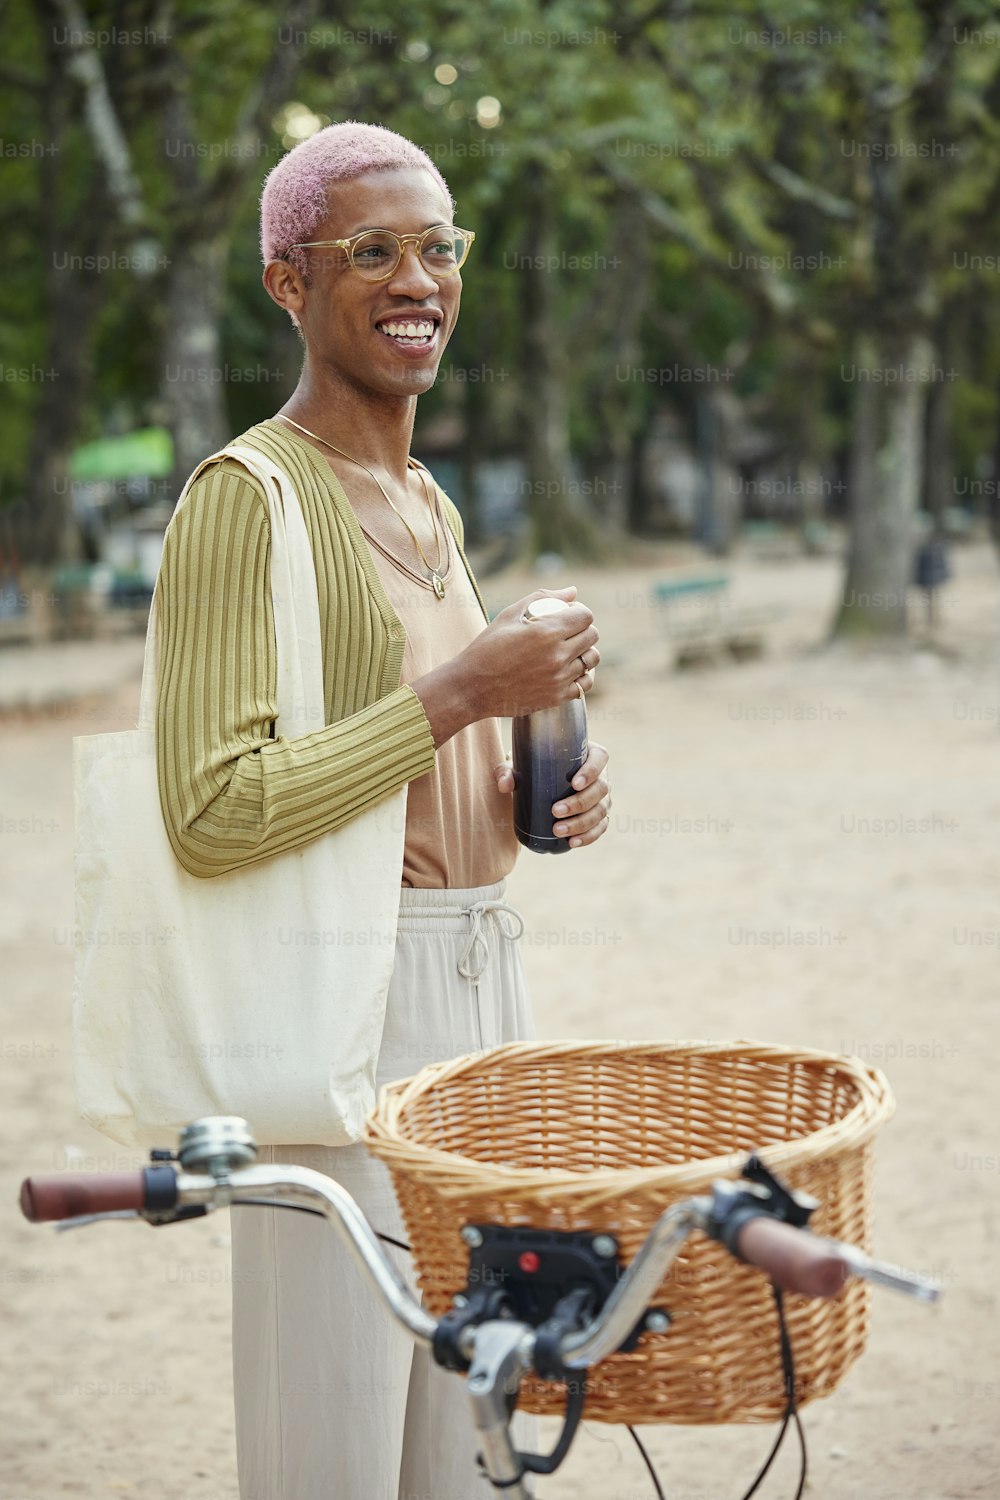 Un hombre parado junto a una bicicleta sosteniendo una botella